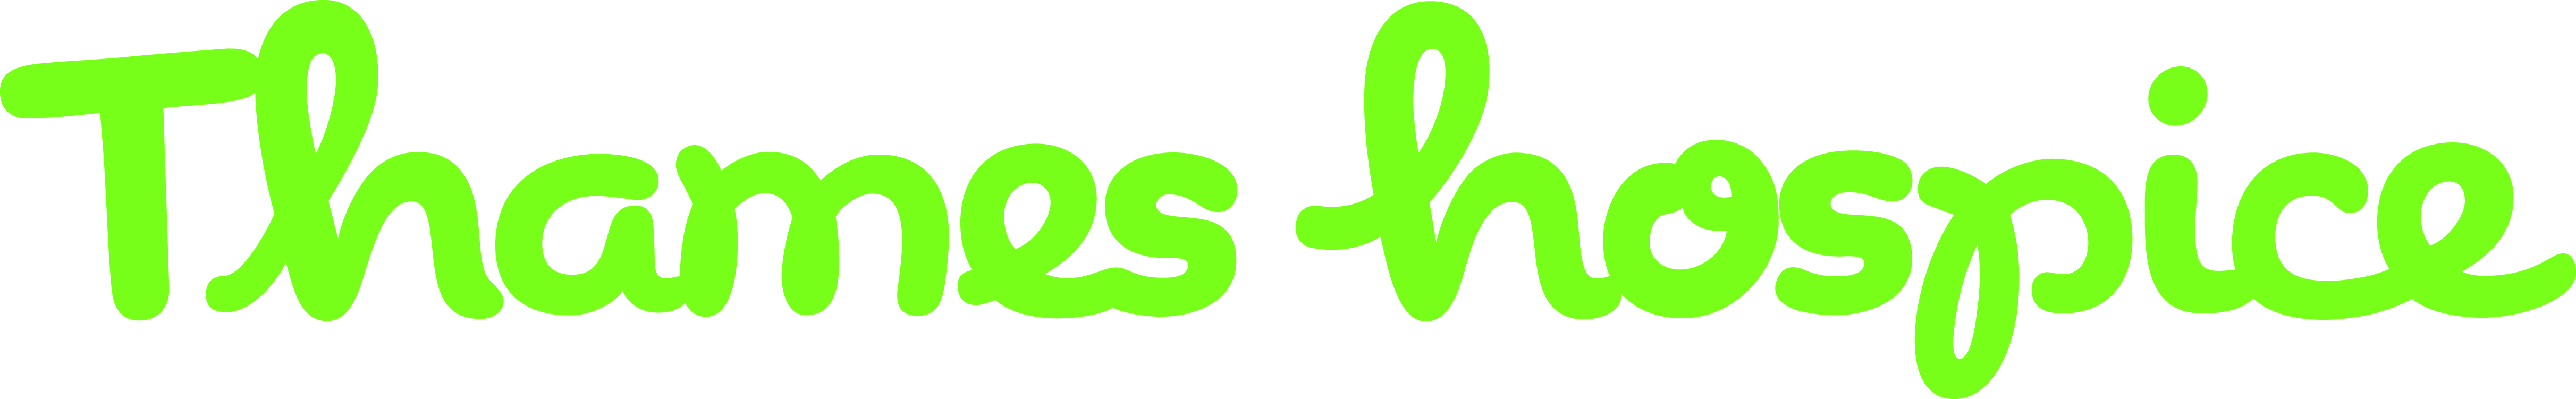 Green logo in hand wirtten style